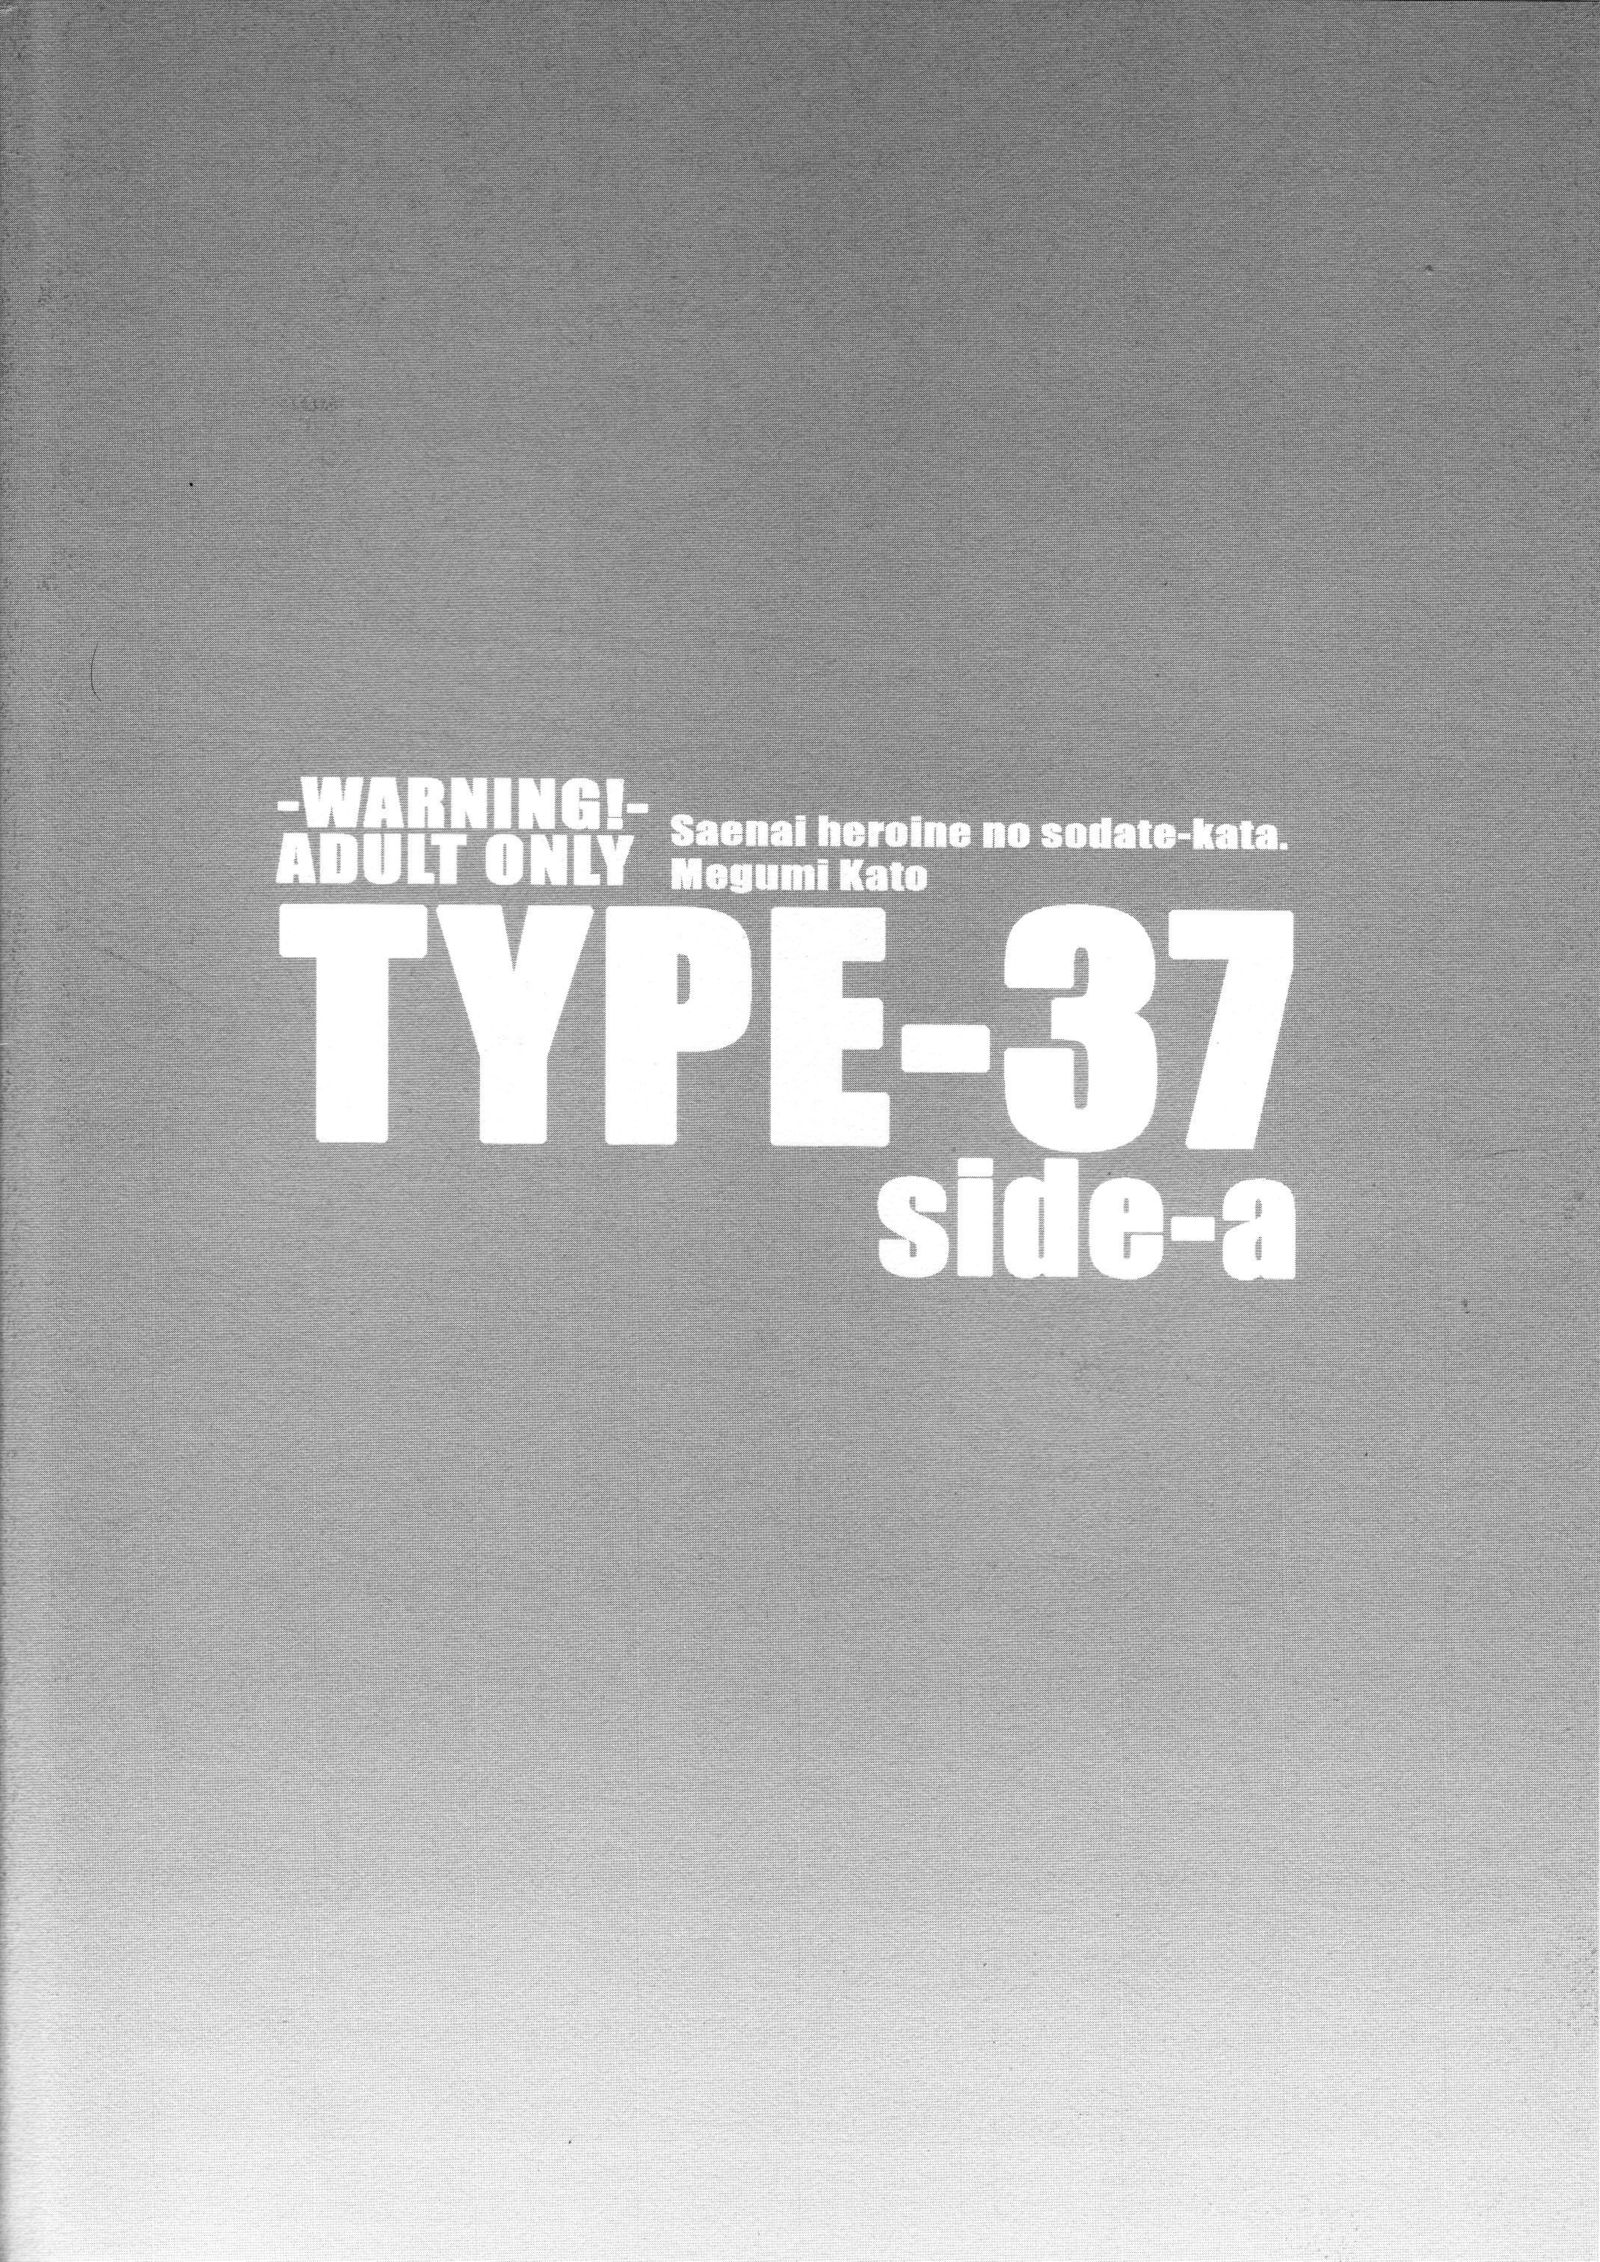 TYPE-37サイド-a